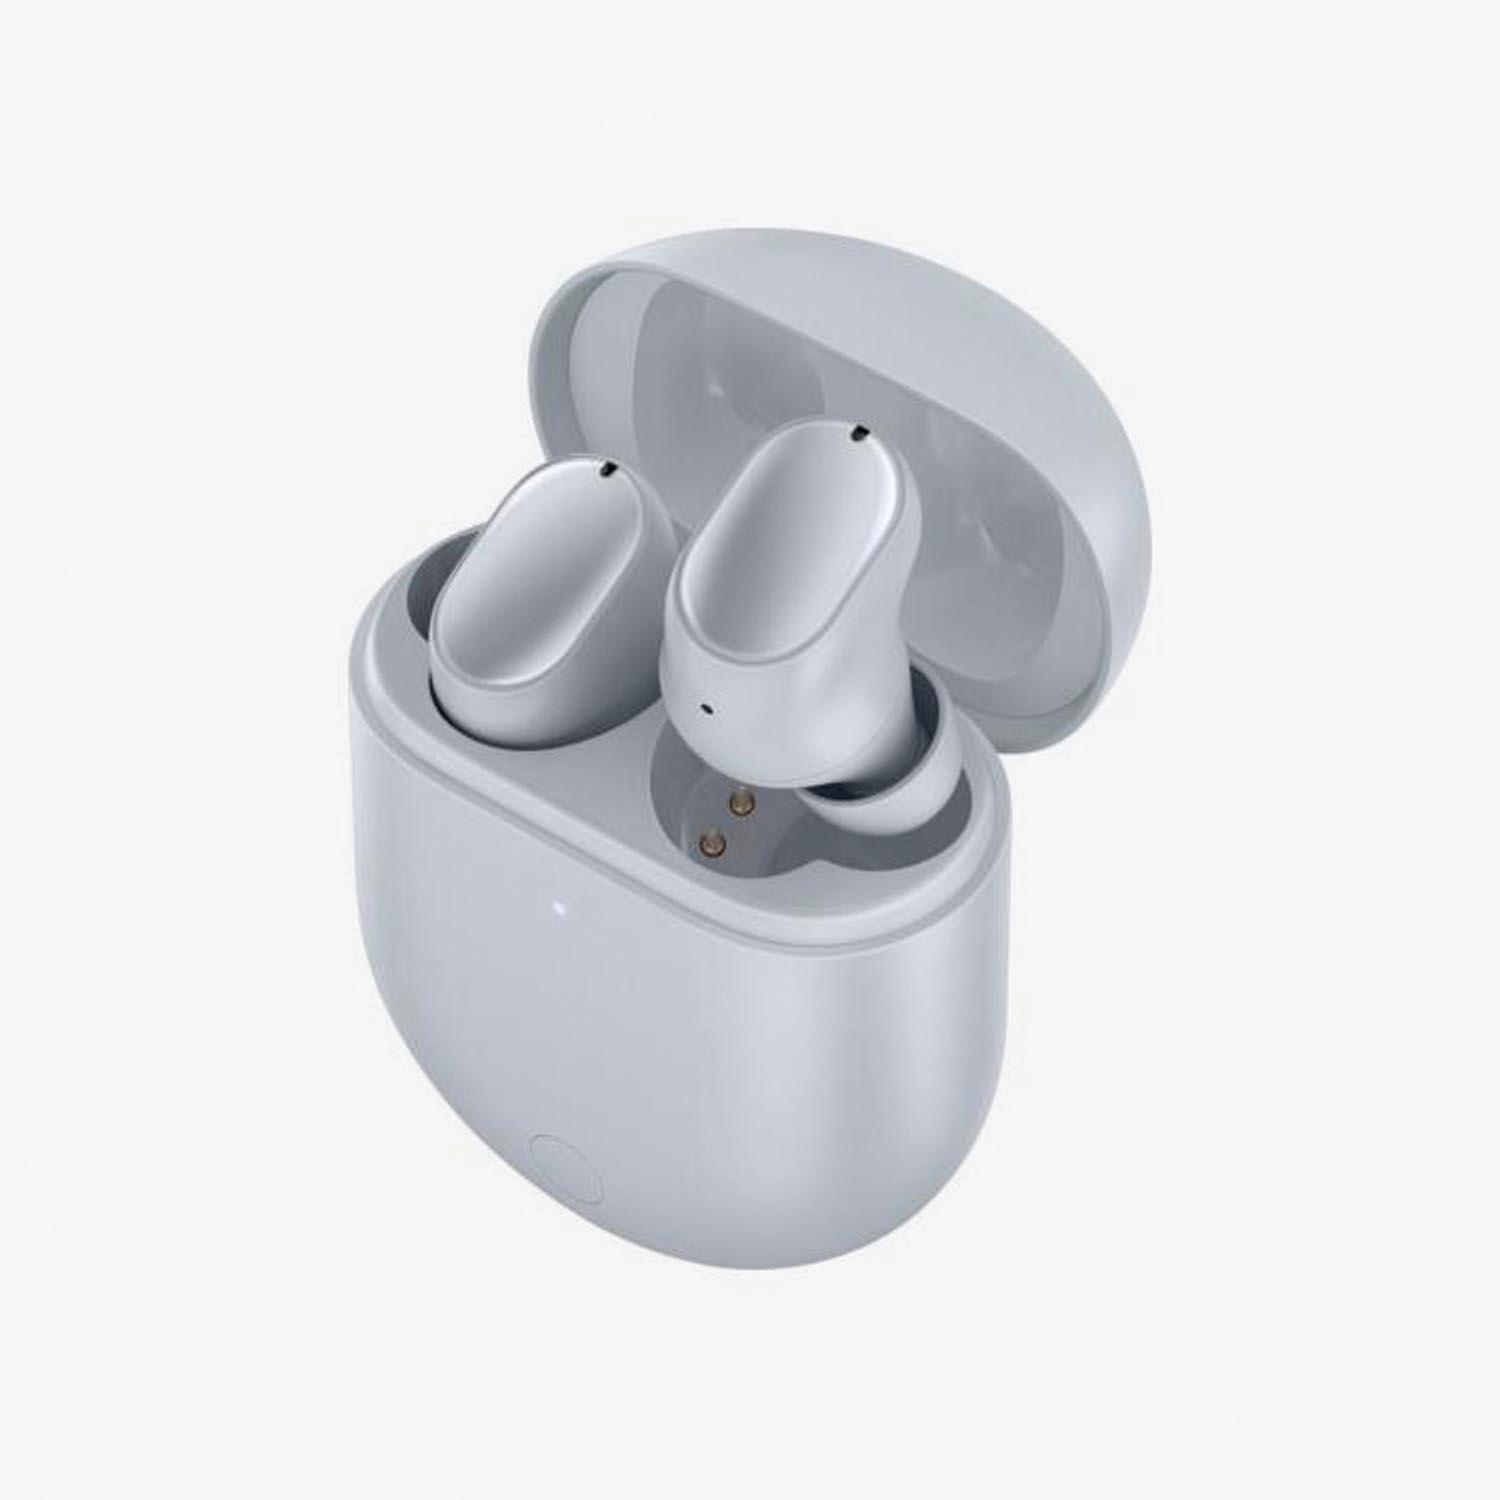 Nuevos auriculares Xiaomi Redmi Airdots 2: mejor sonido y mismo precio